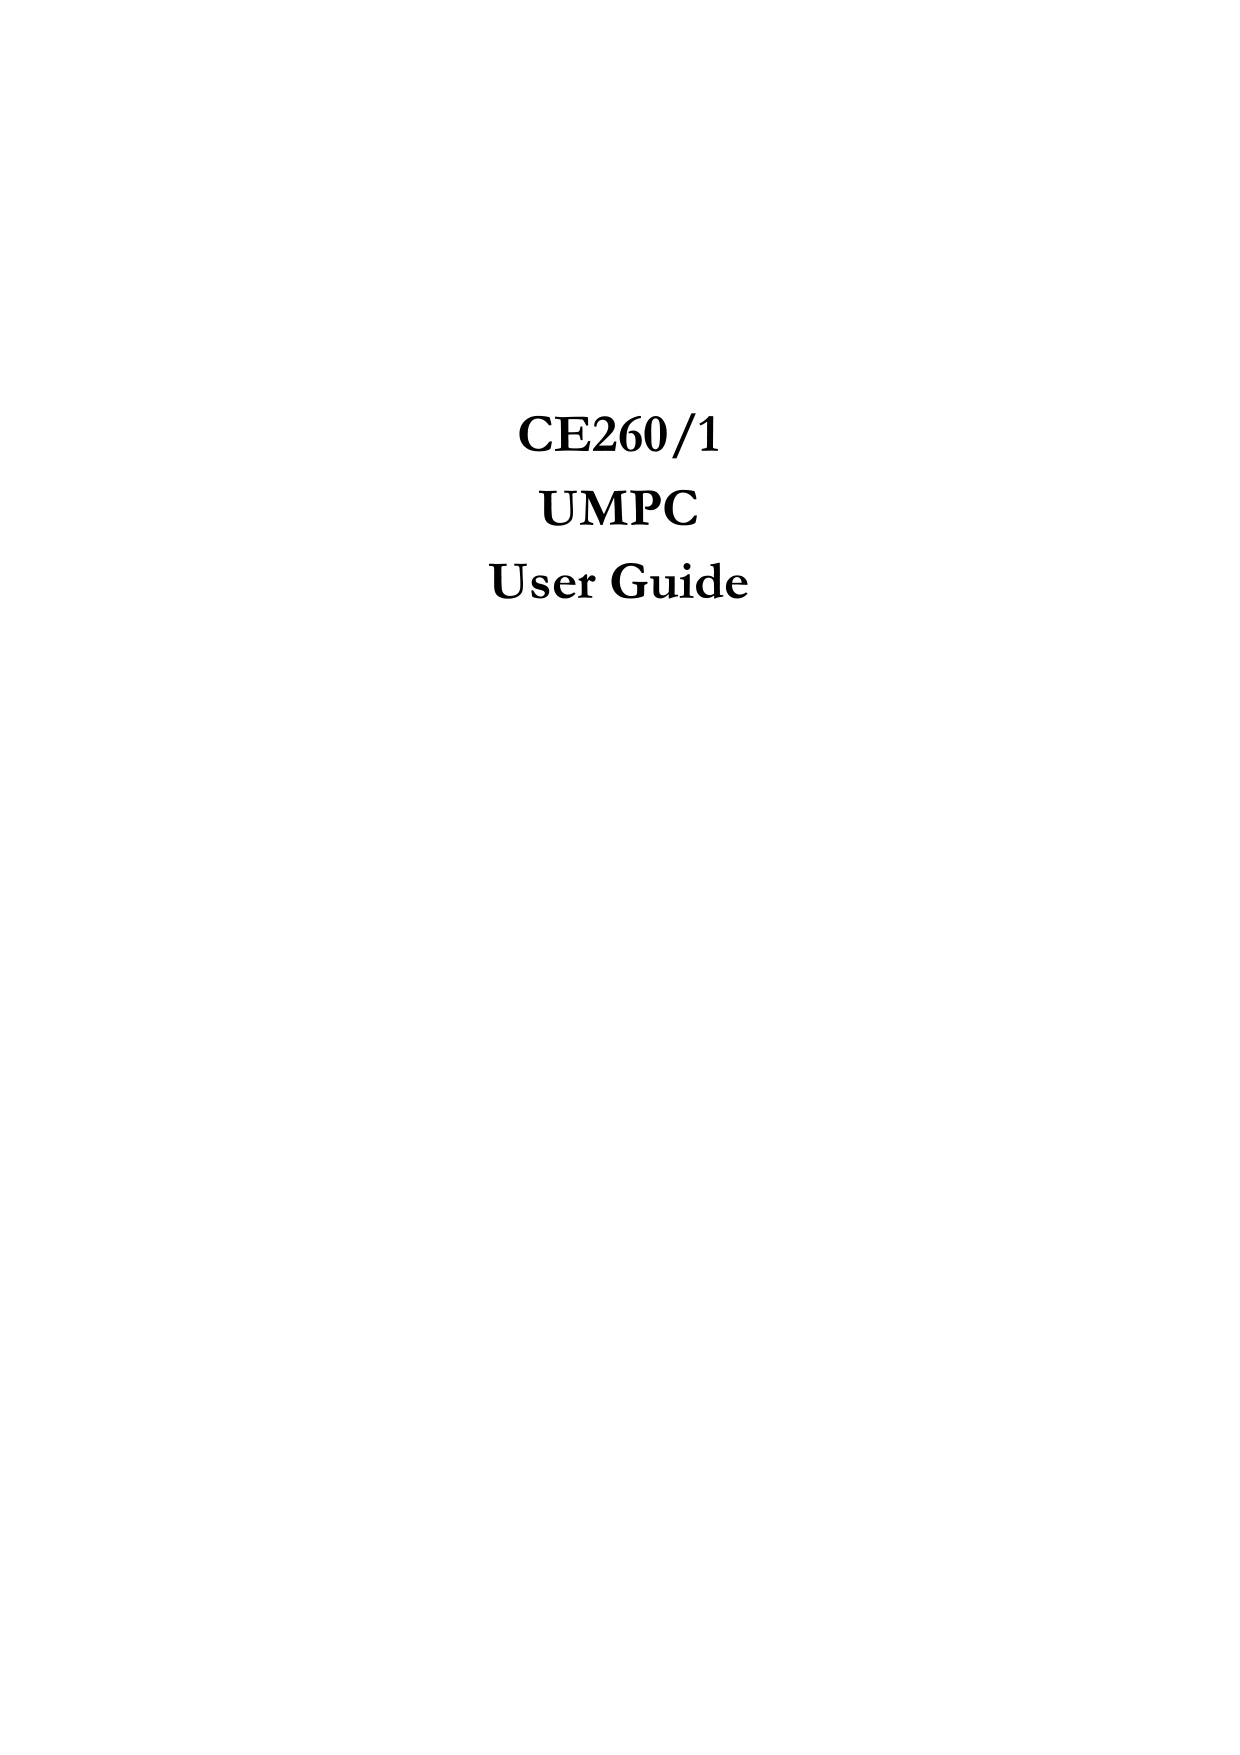     CE260/1  UMPC User Guide   